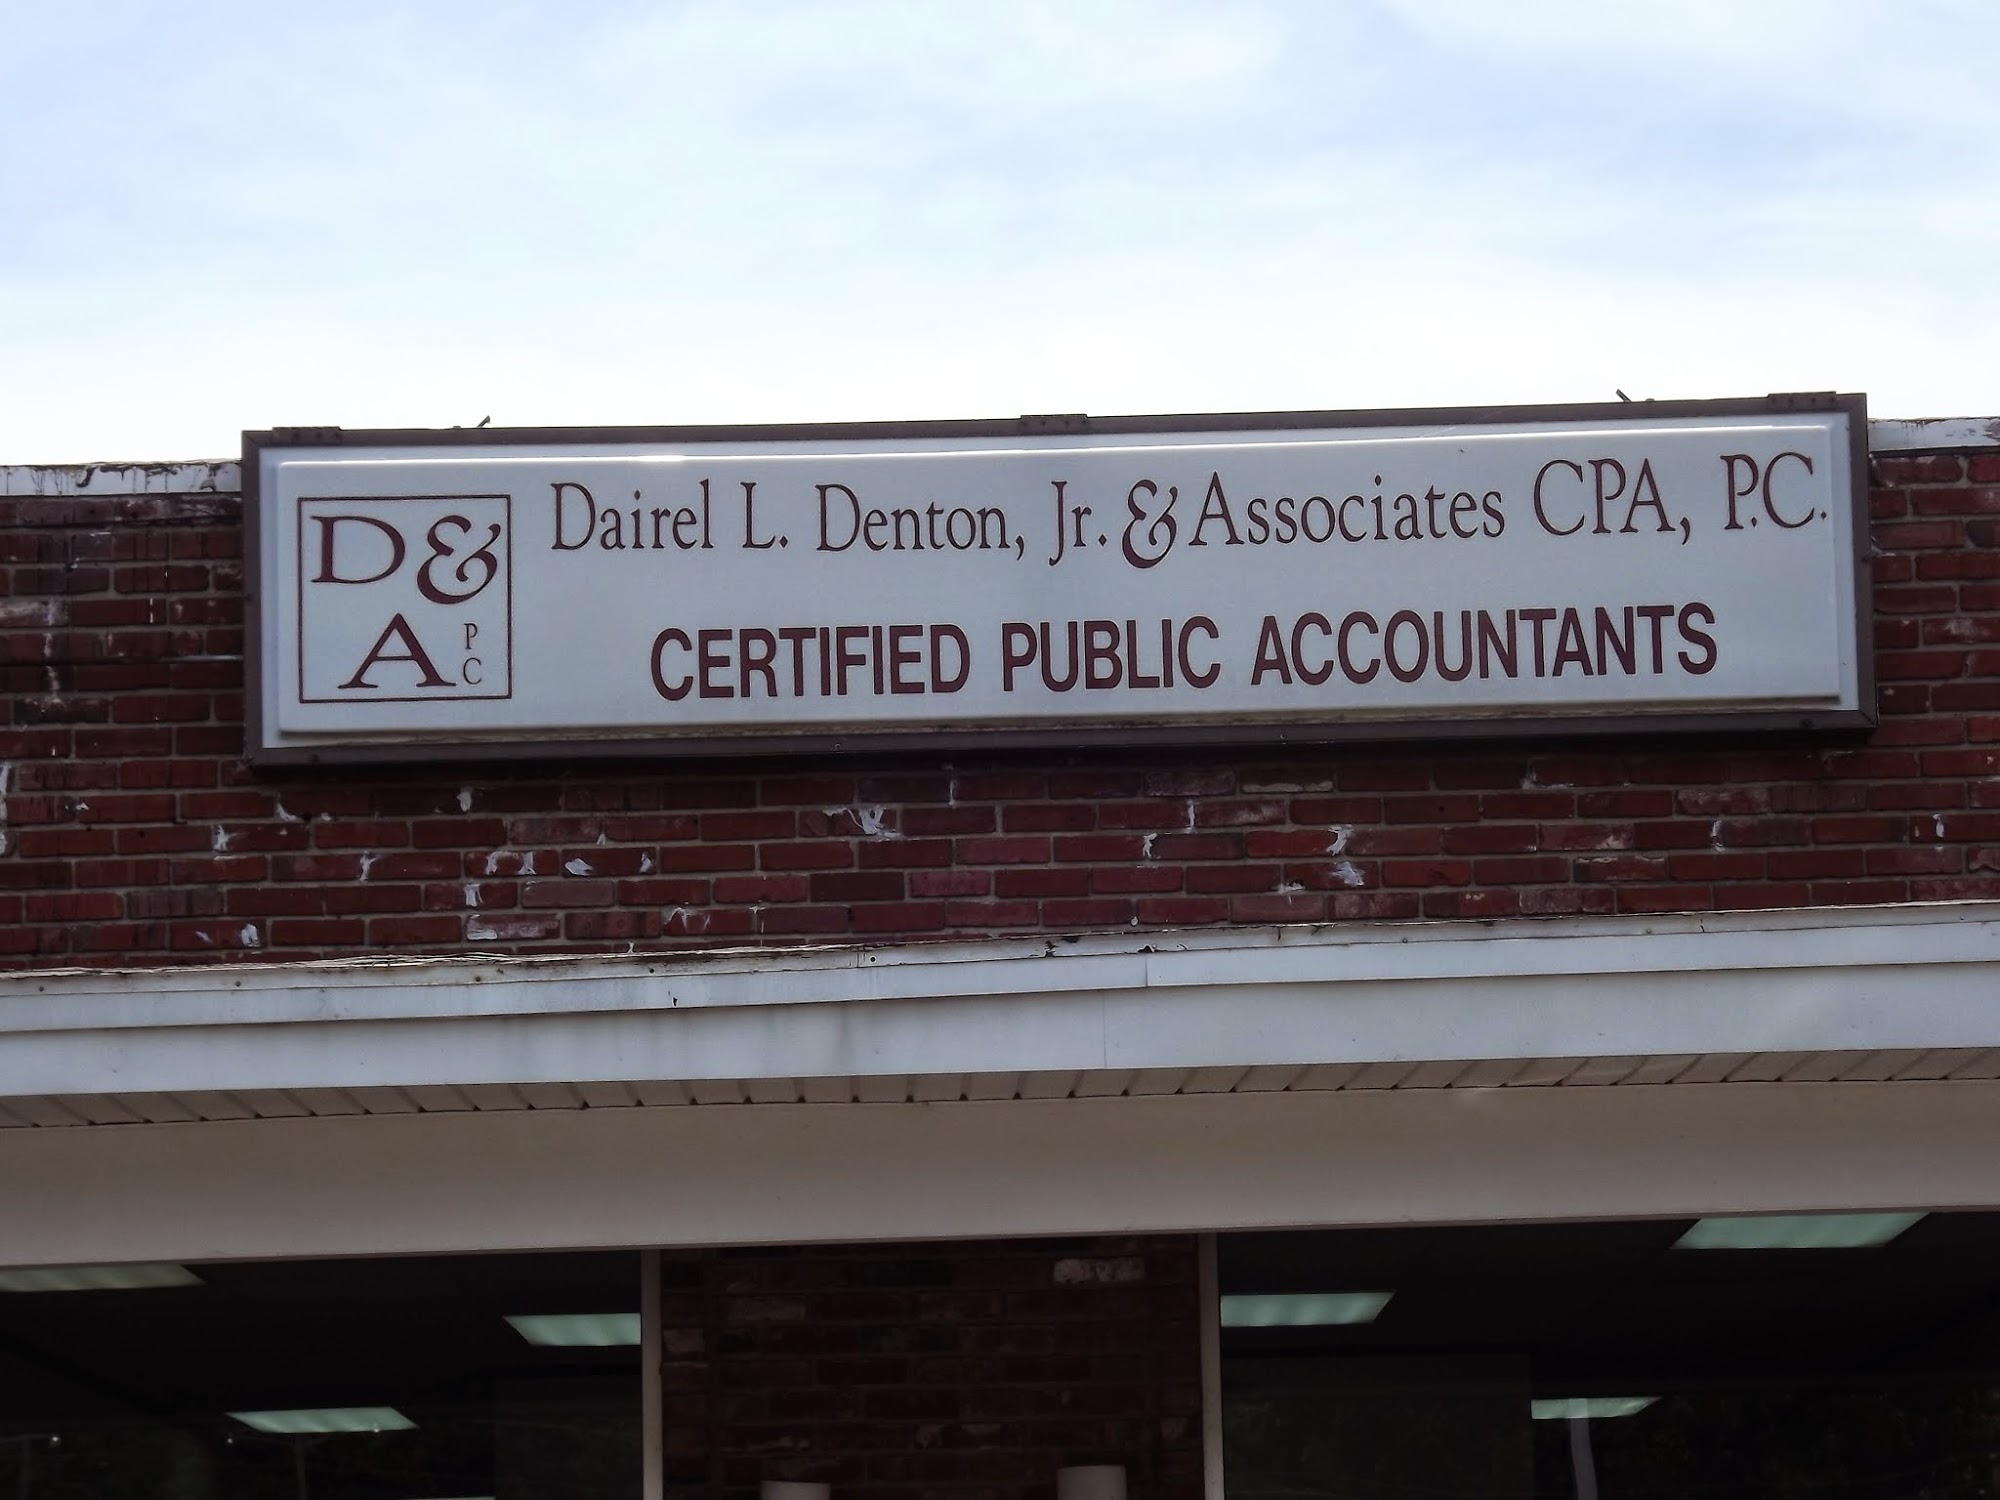 Dairel L. Denton, Jr., & Associates